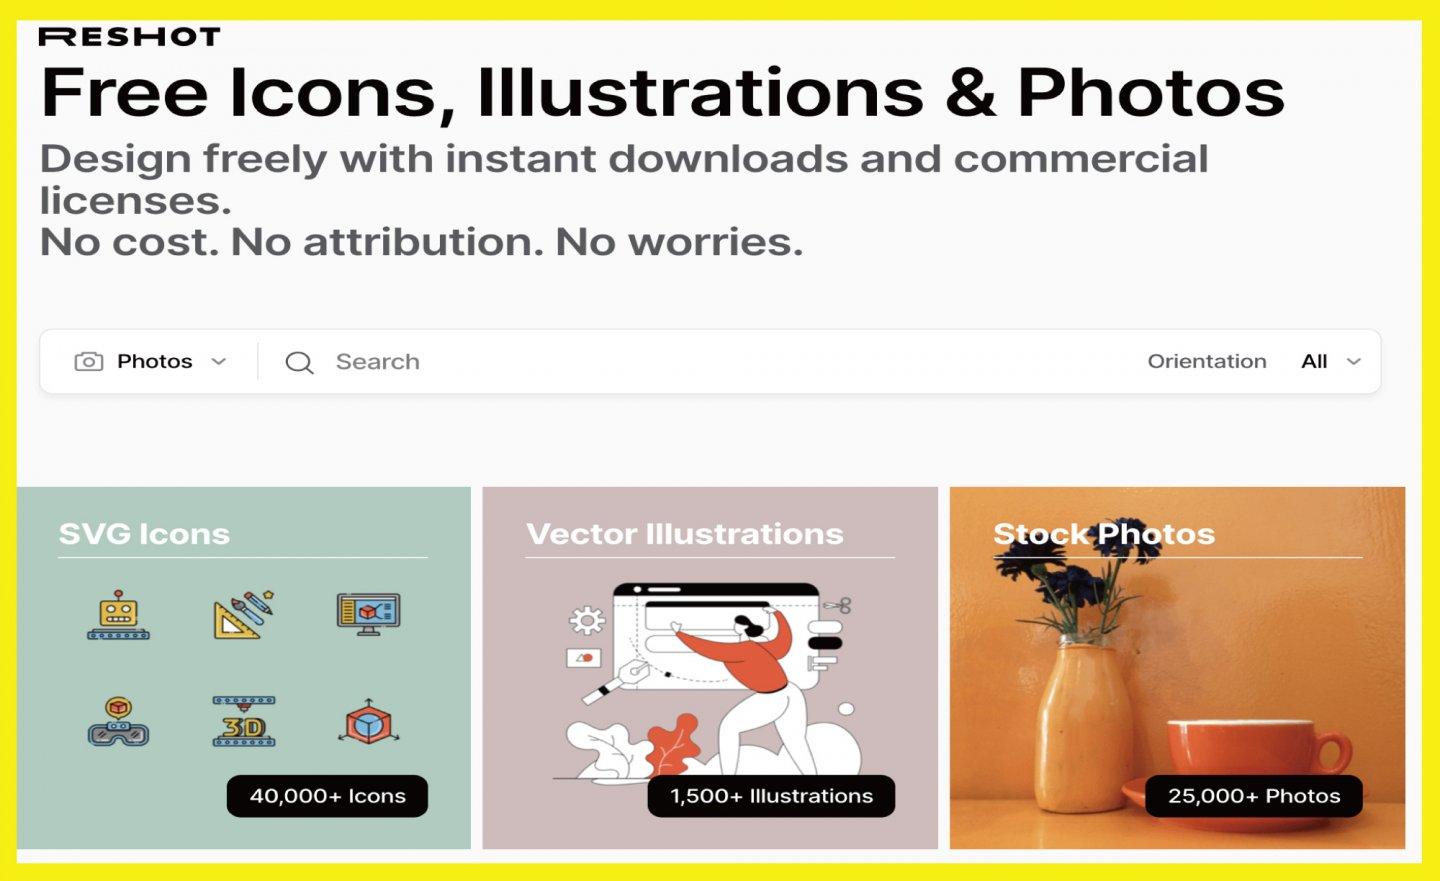 【免費】SVG 圖示、照片、插圖圖庫「Reshot」， 無需標示出處供商業用途